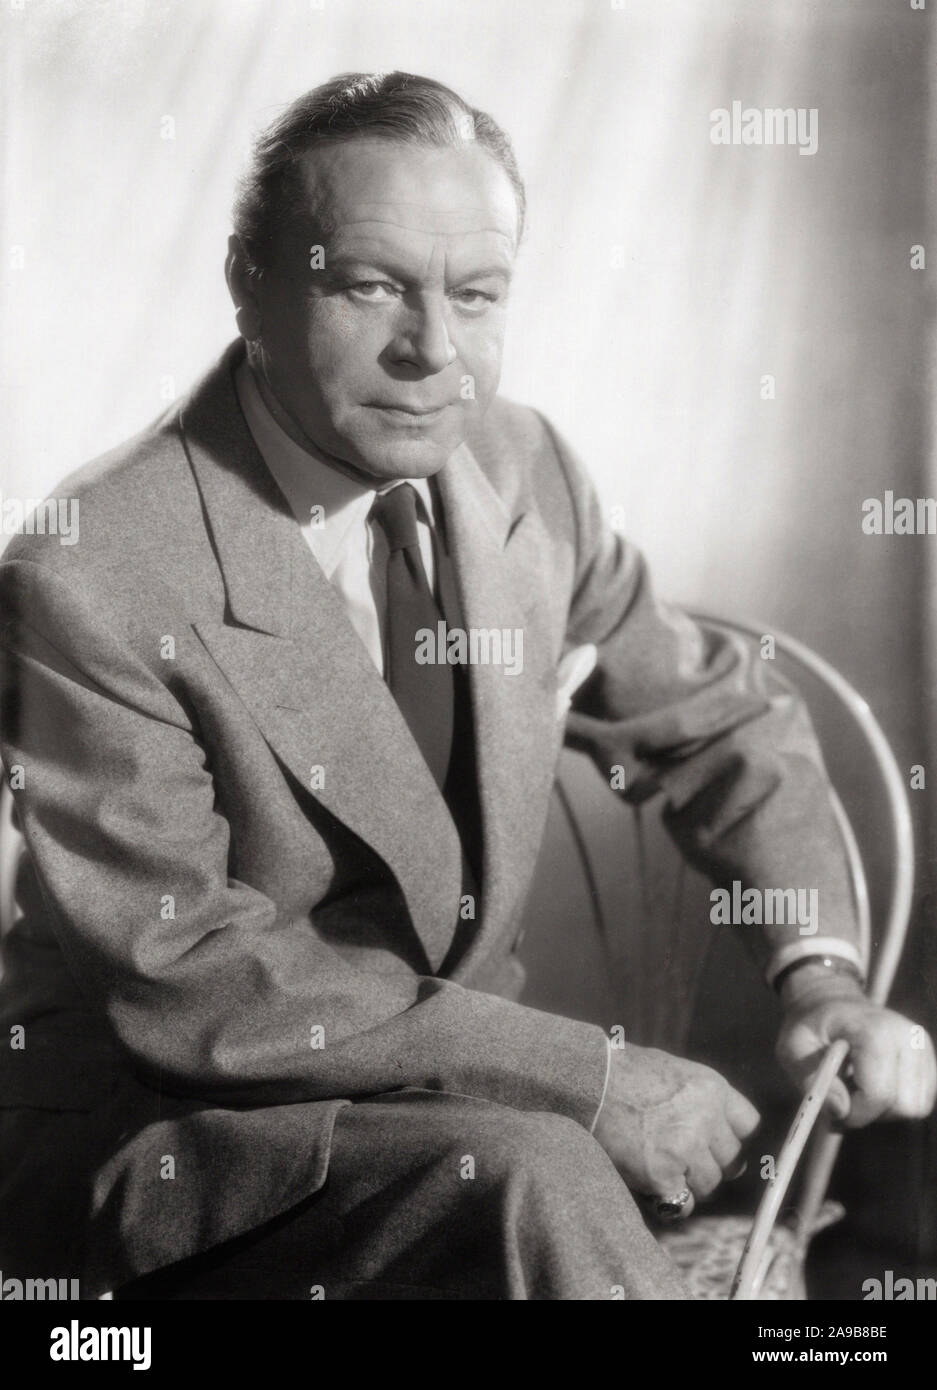 Paul Hartmann, deutscher Schauspieler, Deutschland späte 1950er Jahre. German actor Paul Hartmann, Germany late 1950s. Stock Photo